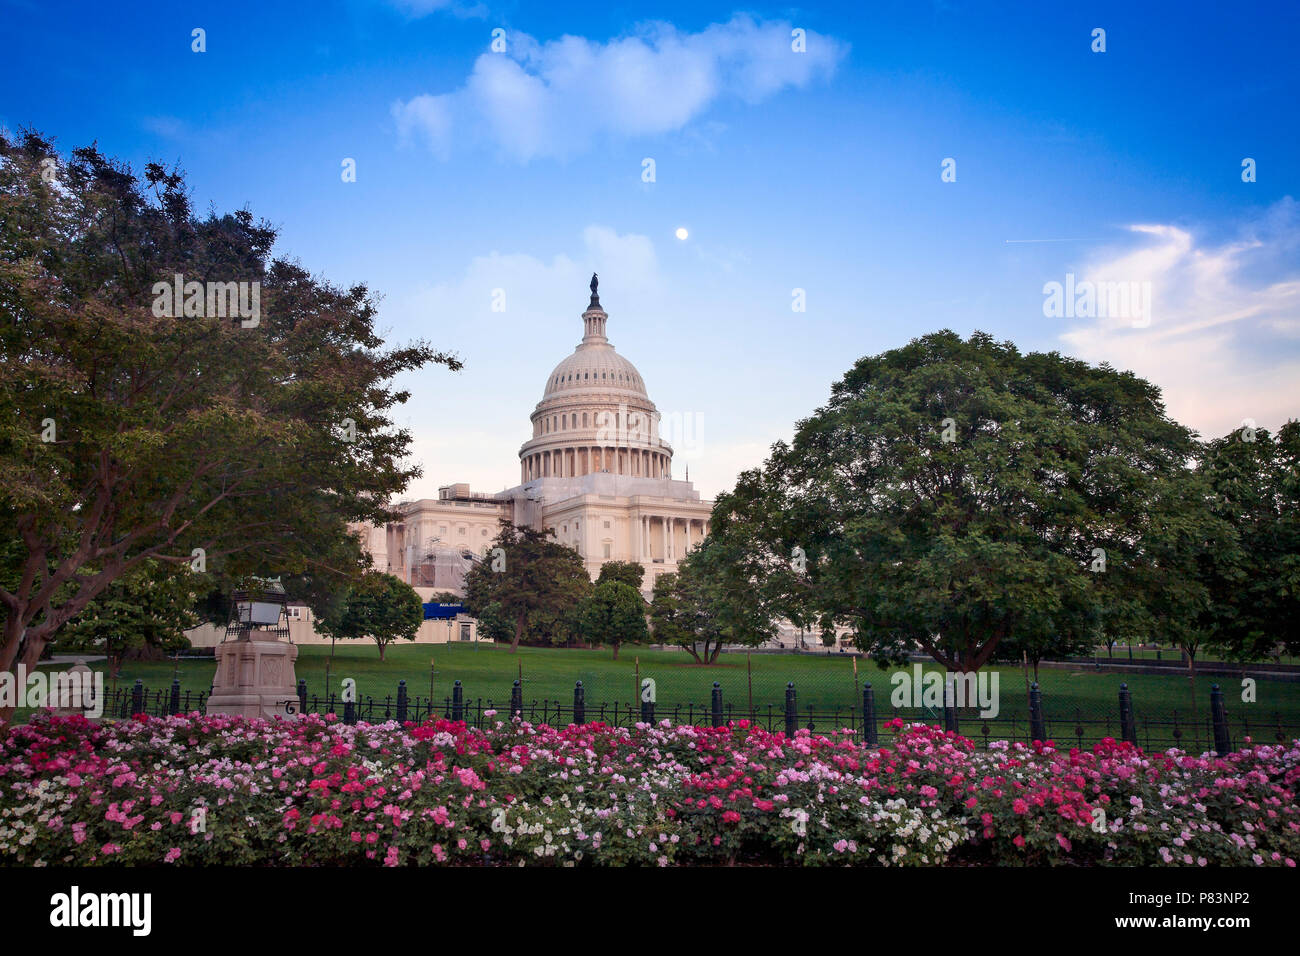 Le bâtiment du Capitole, qui abrite le Sénat et la Chambre des représentants des États-Unis sur le National Mall, Washington, DC. Banque D'Images